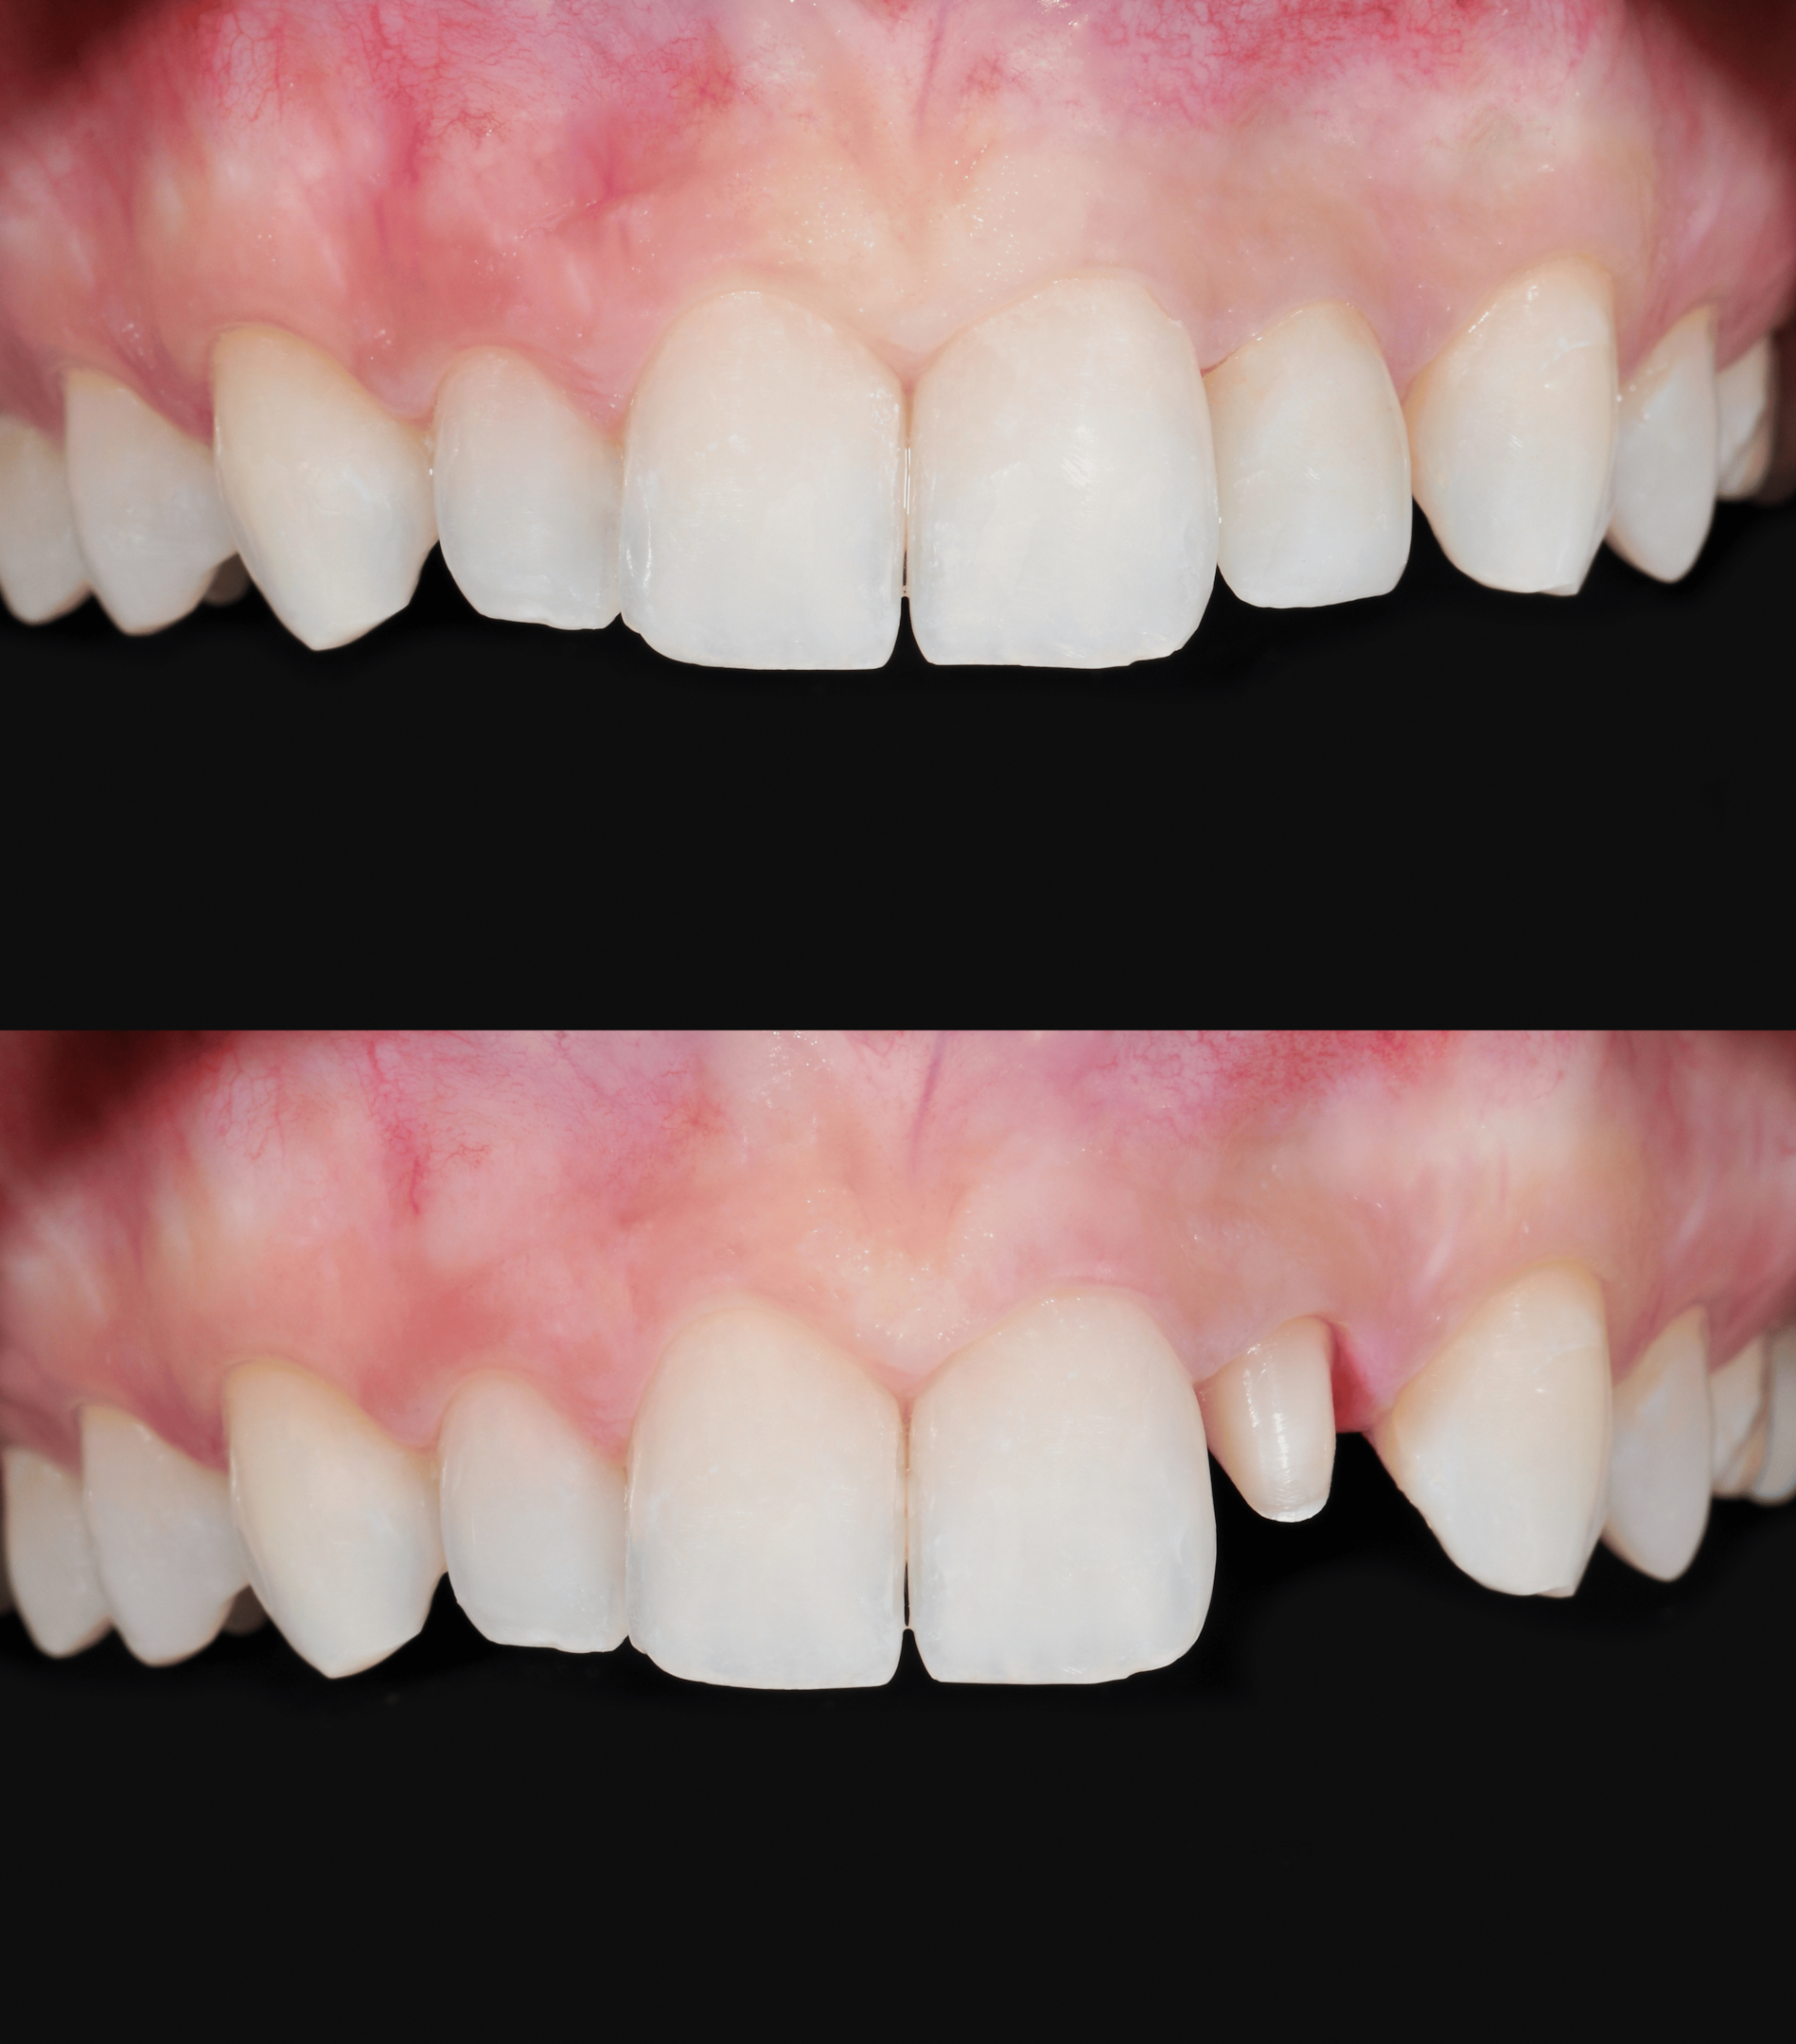 Eksempel på tann før og etter krone